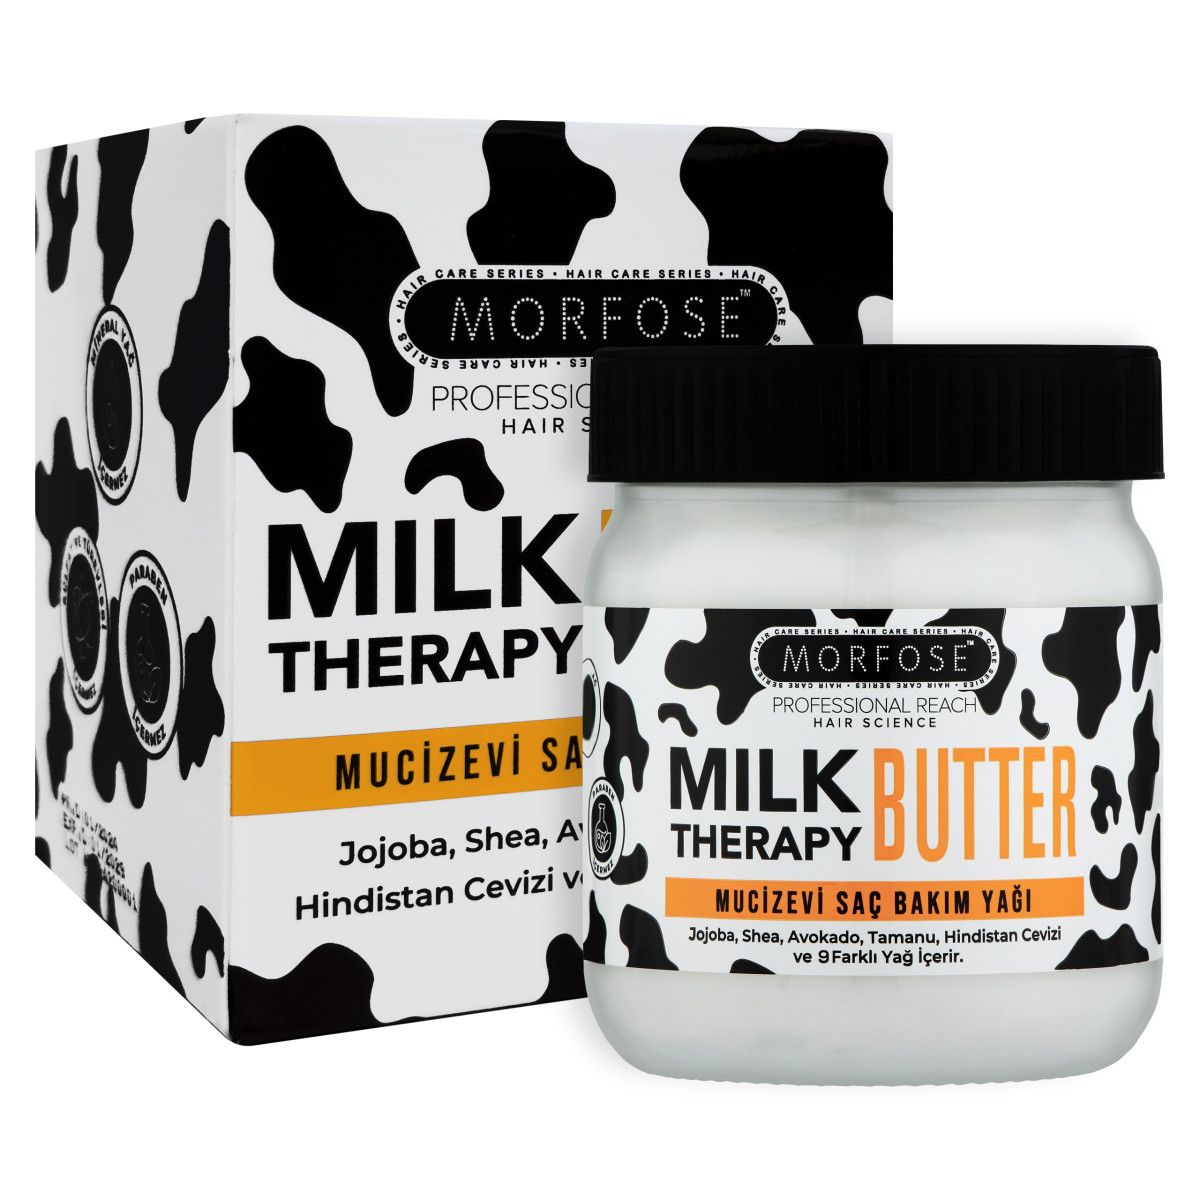 Morfose Milk Therapy Butter - odżywcze masło do włosów z proteinami mleka, 200ml